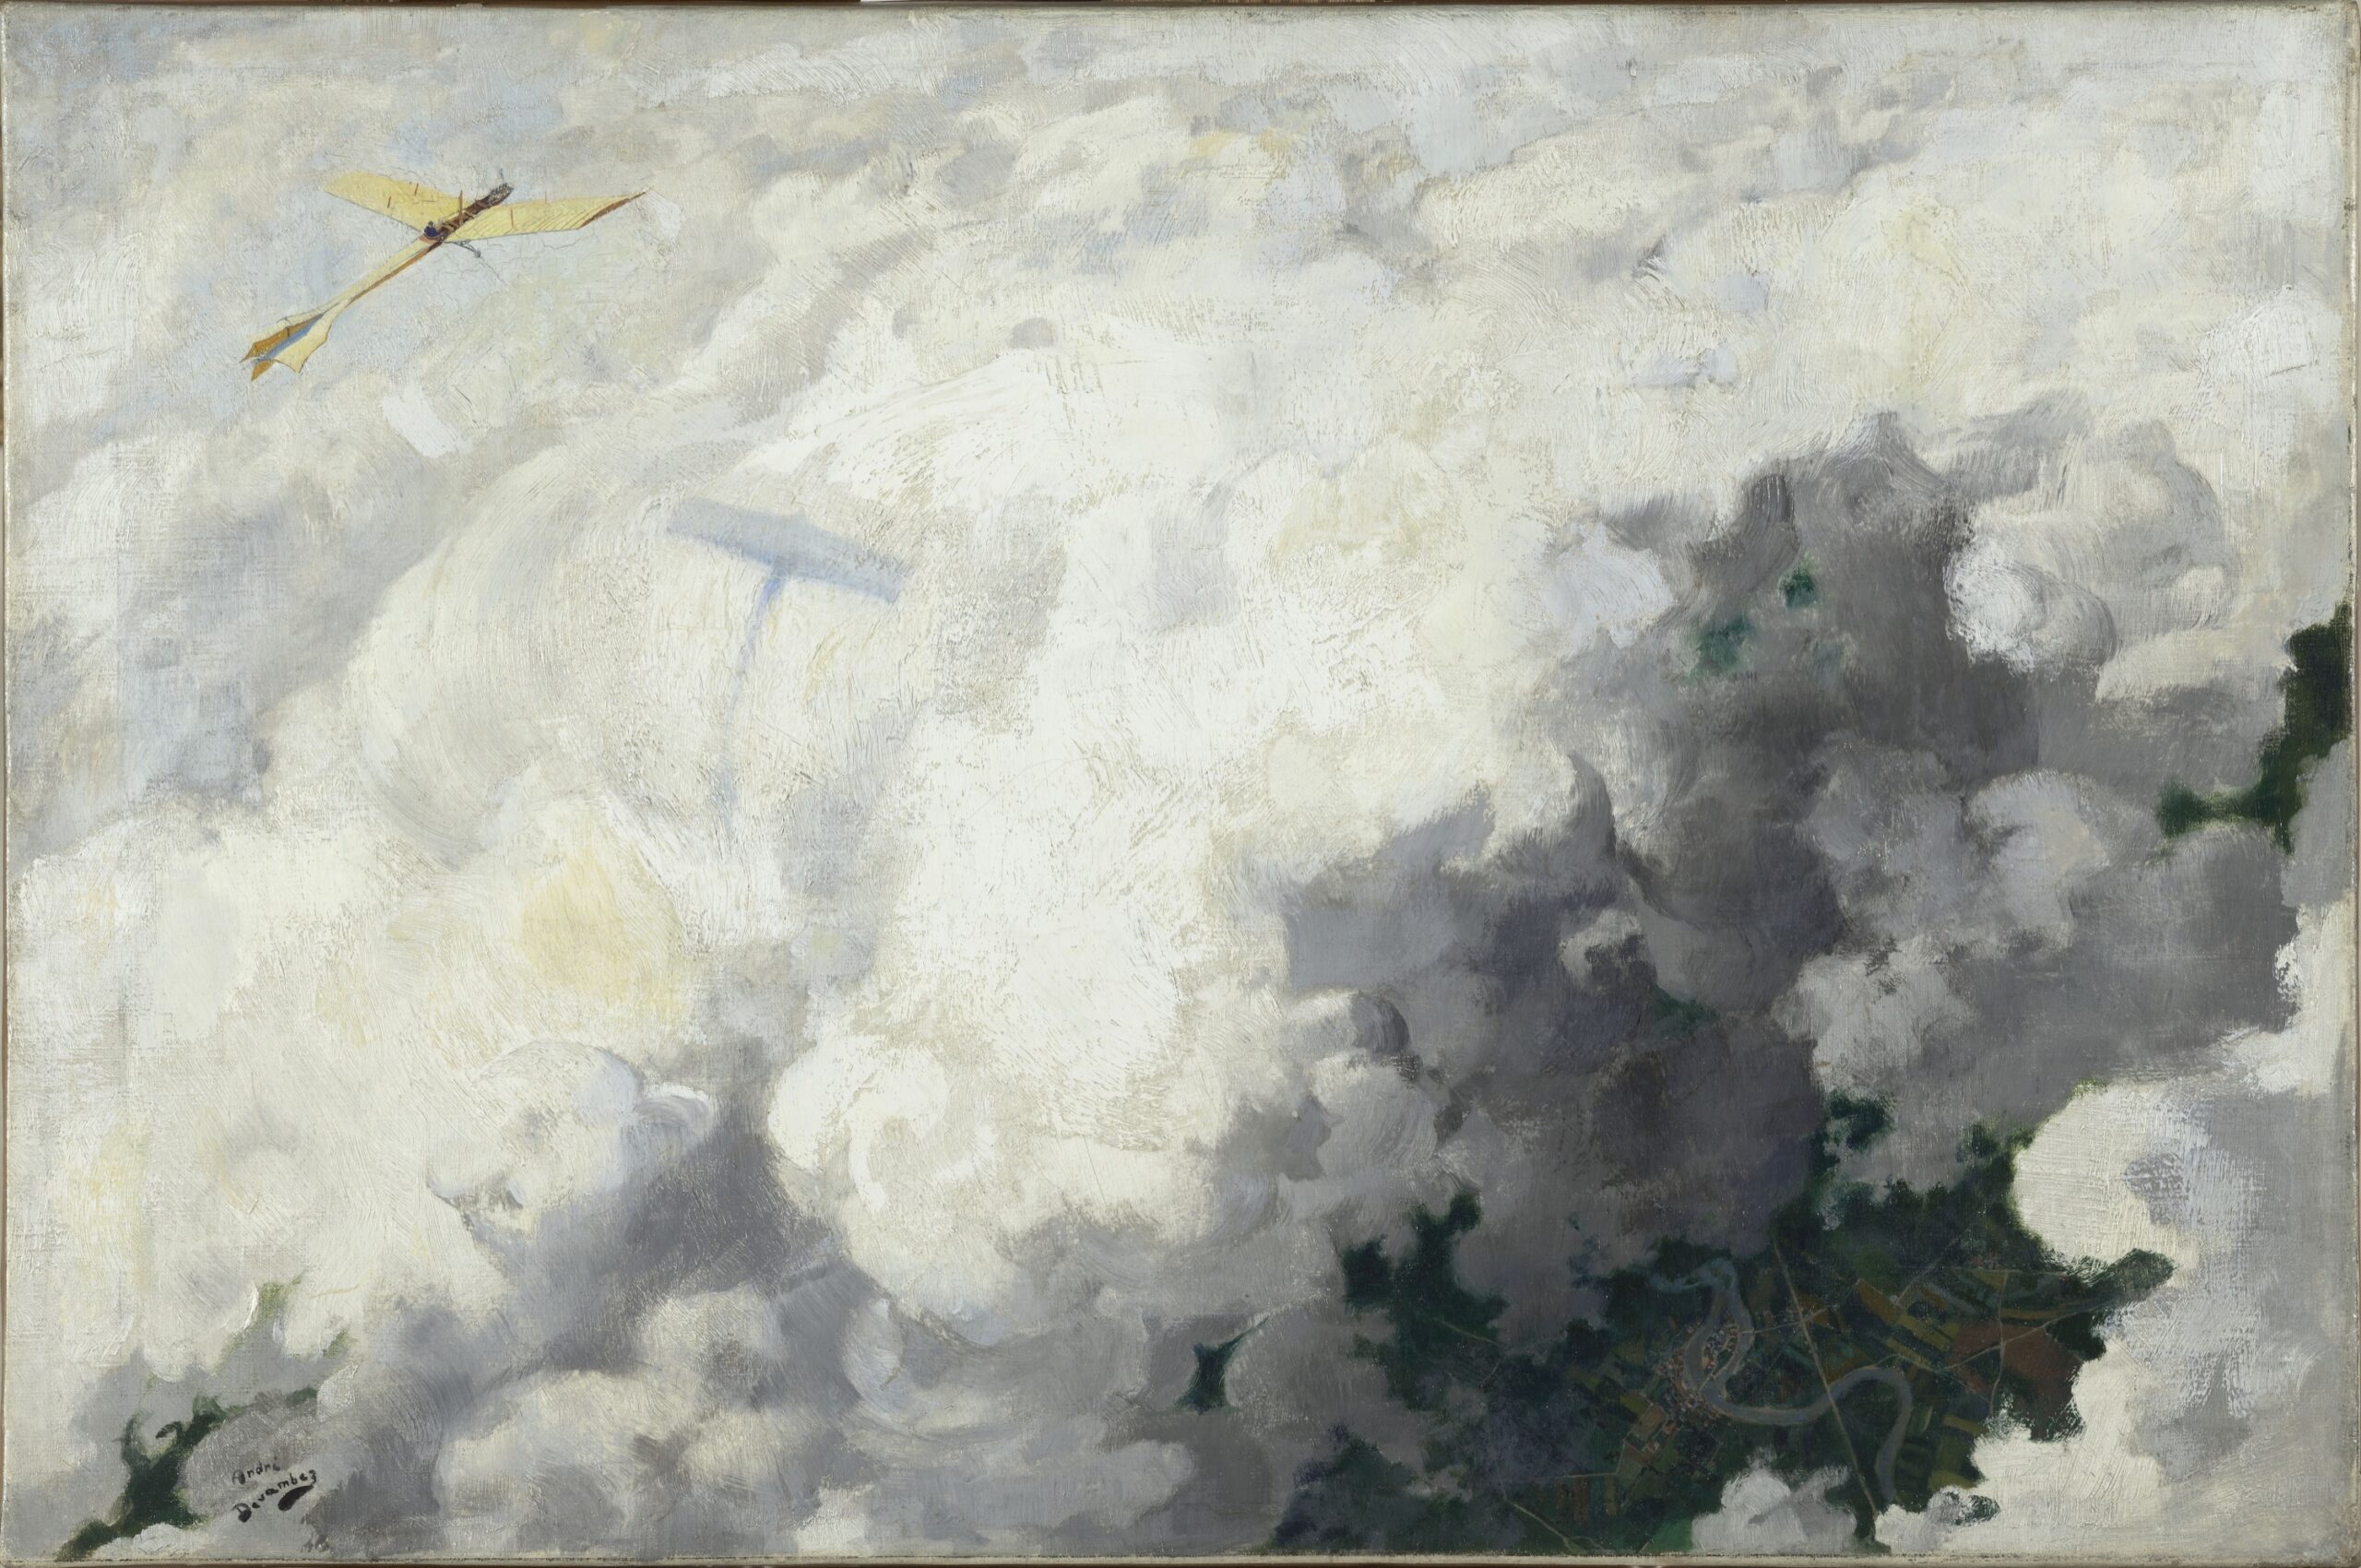 André Devambez (1867-1944), Le seul oiseau qui vole au-dessus des nuages, 1910. Huile sur toile, 45,2 × 68 cm. Paris, musée d’Orsay. © RMN (musée d’Orsay) – H. Lewandowski